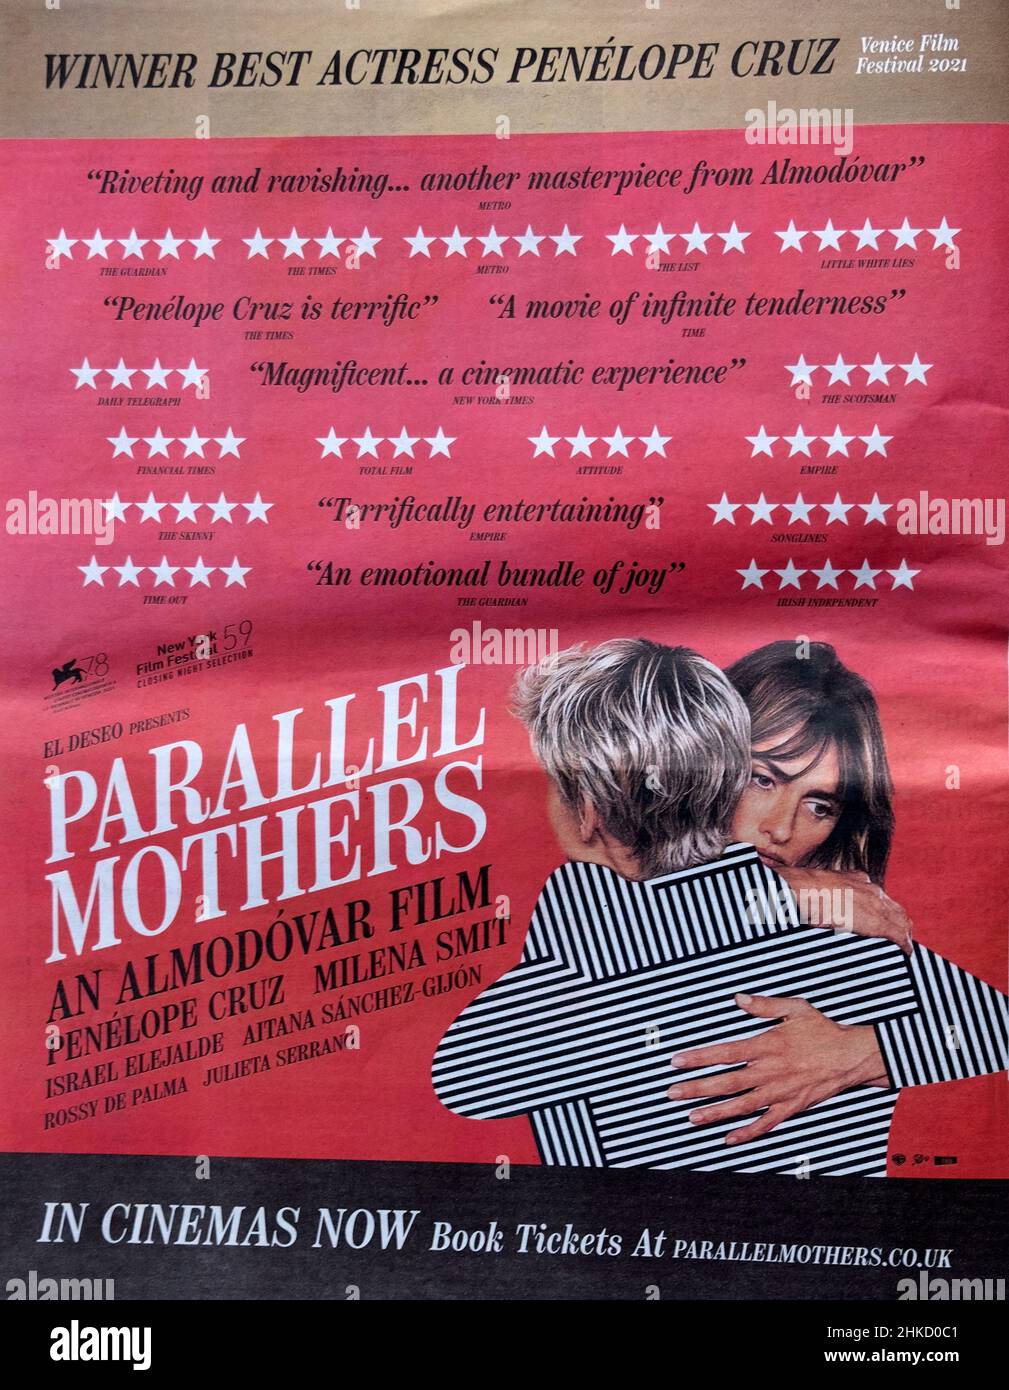 Anuncio de la película de Pedro Almodovar Parallel Mothers protagonizada por las mujeres Penelope Cruz y Milena Smit en el periódico Reino Unido Foto de stock